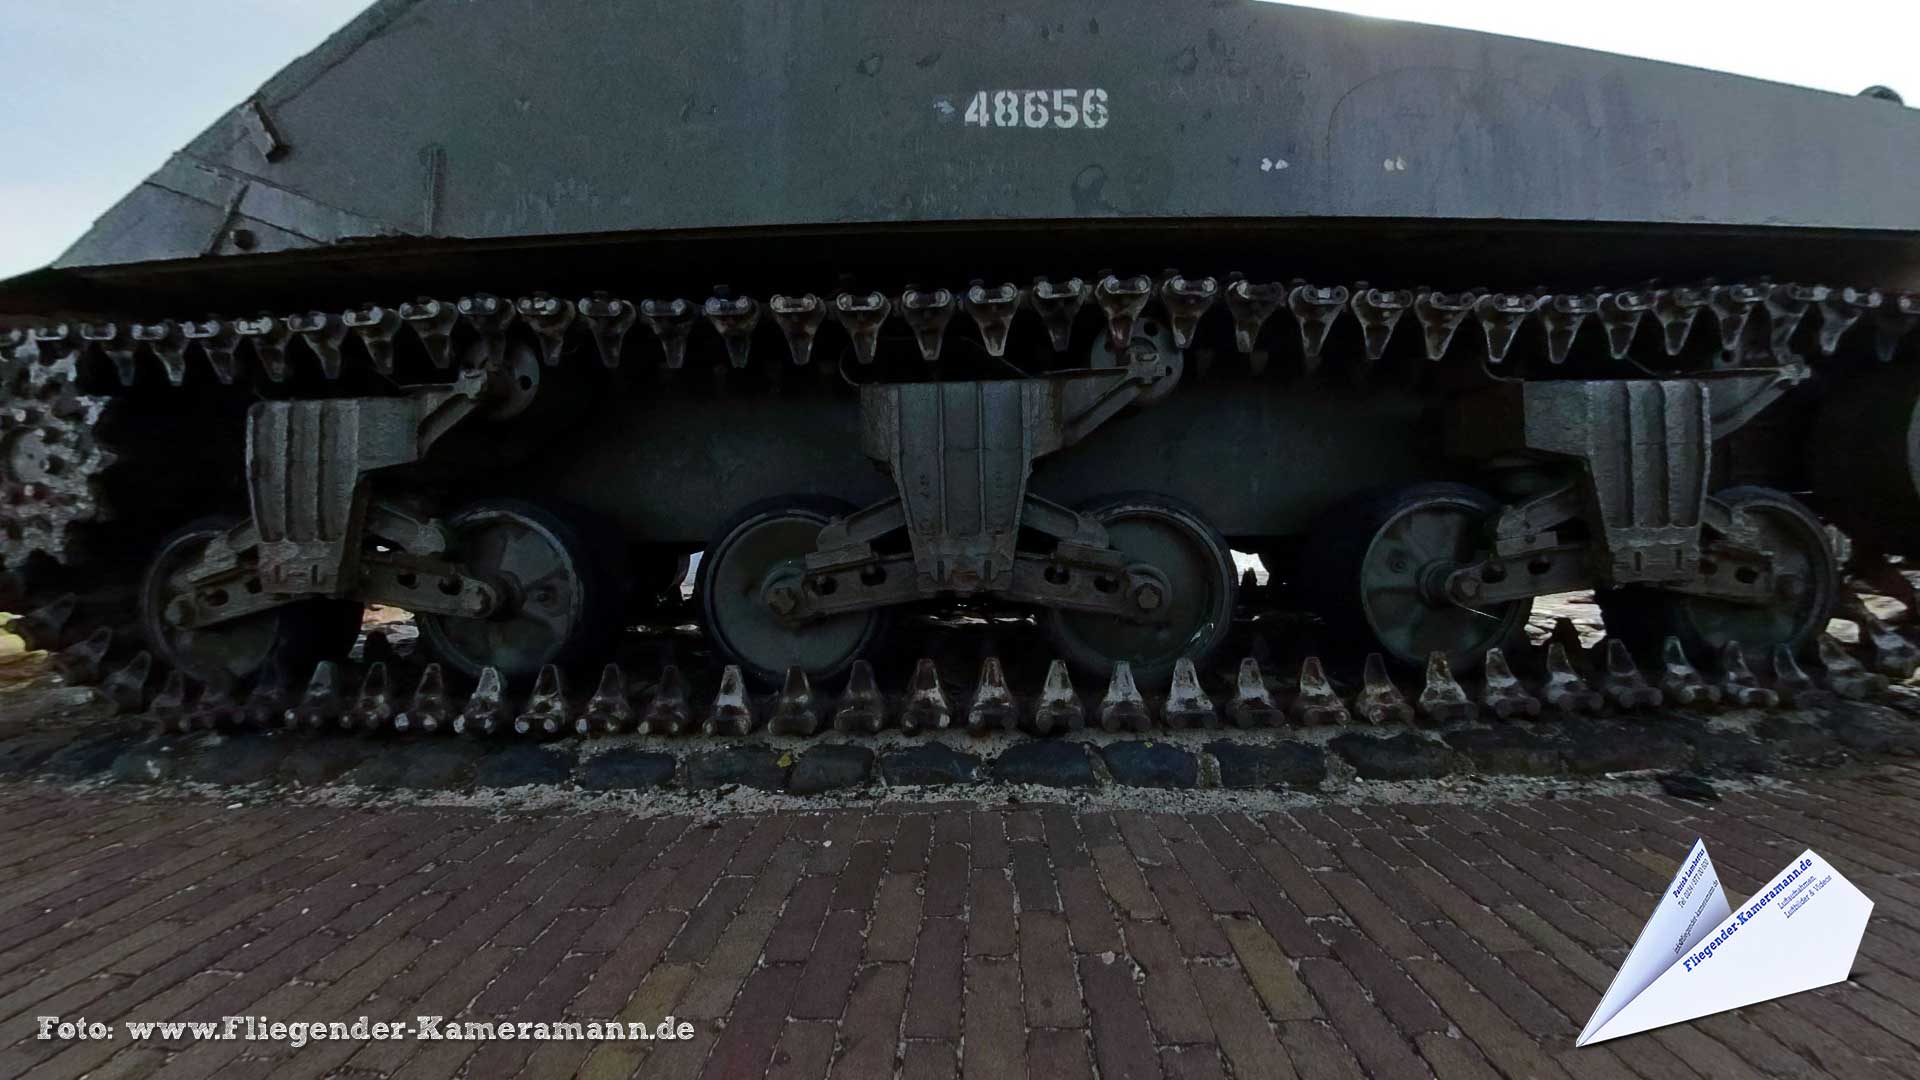 Tank in het Oorlogsmuseum "Polderhuis" in Westkapelle (NL) - 360°-Panorama